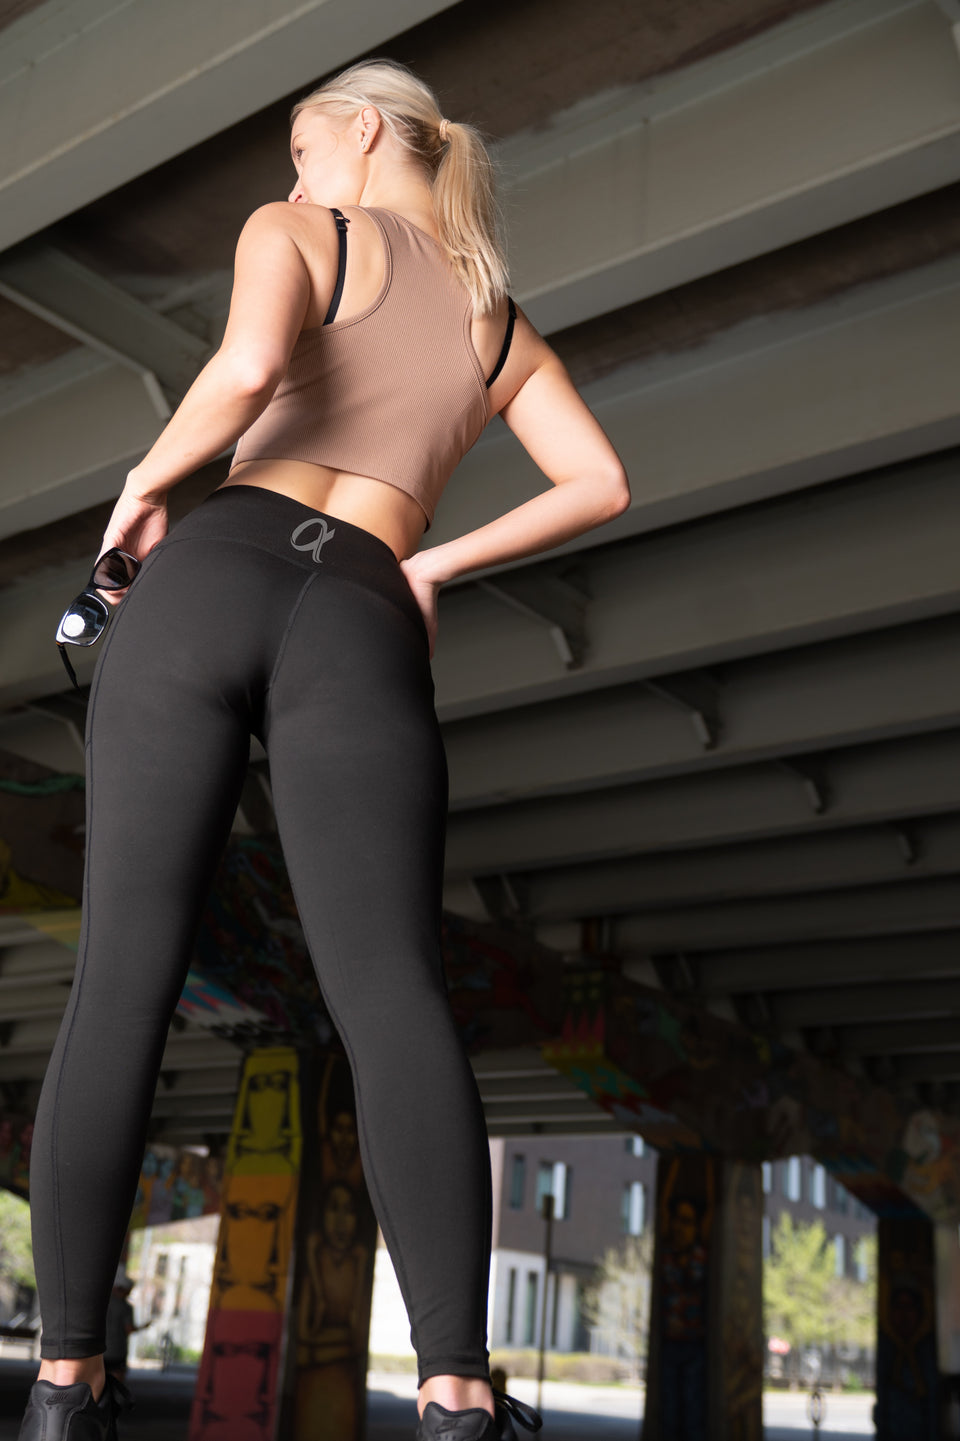 Bona Fide Butt Lifting Leggings for Women - Scrunch Butt Leggings High  Waisted T